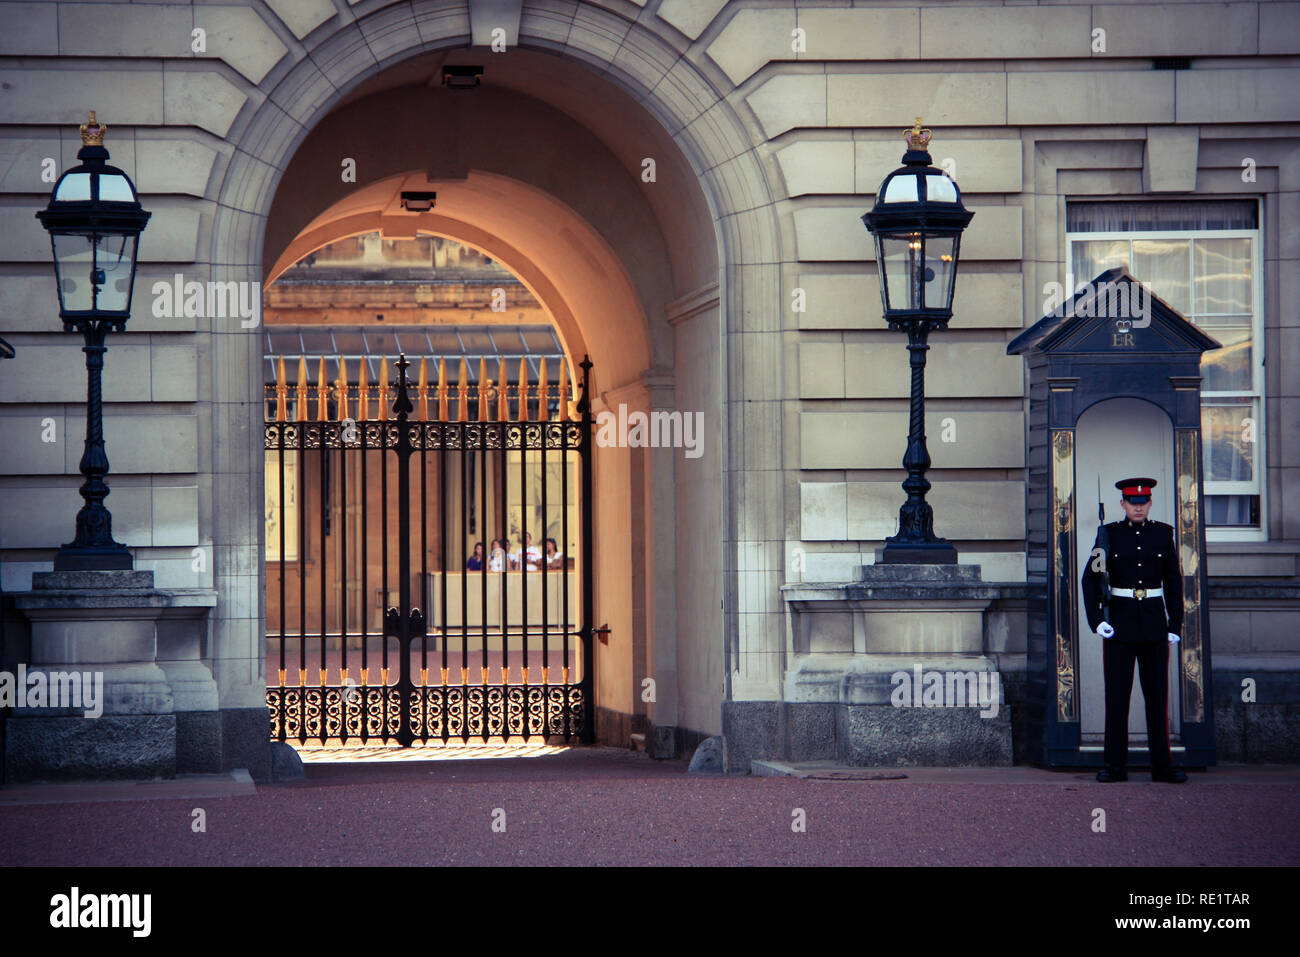 Royal Guard vor einer Sentry box Neben überdimensionalen Laternen und eine reich verzierte Tor am Buckingham Palace in London, Vereinigtes Königreich Stockfoto